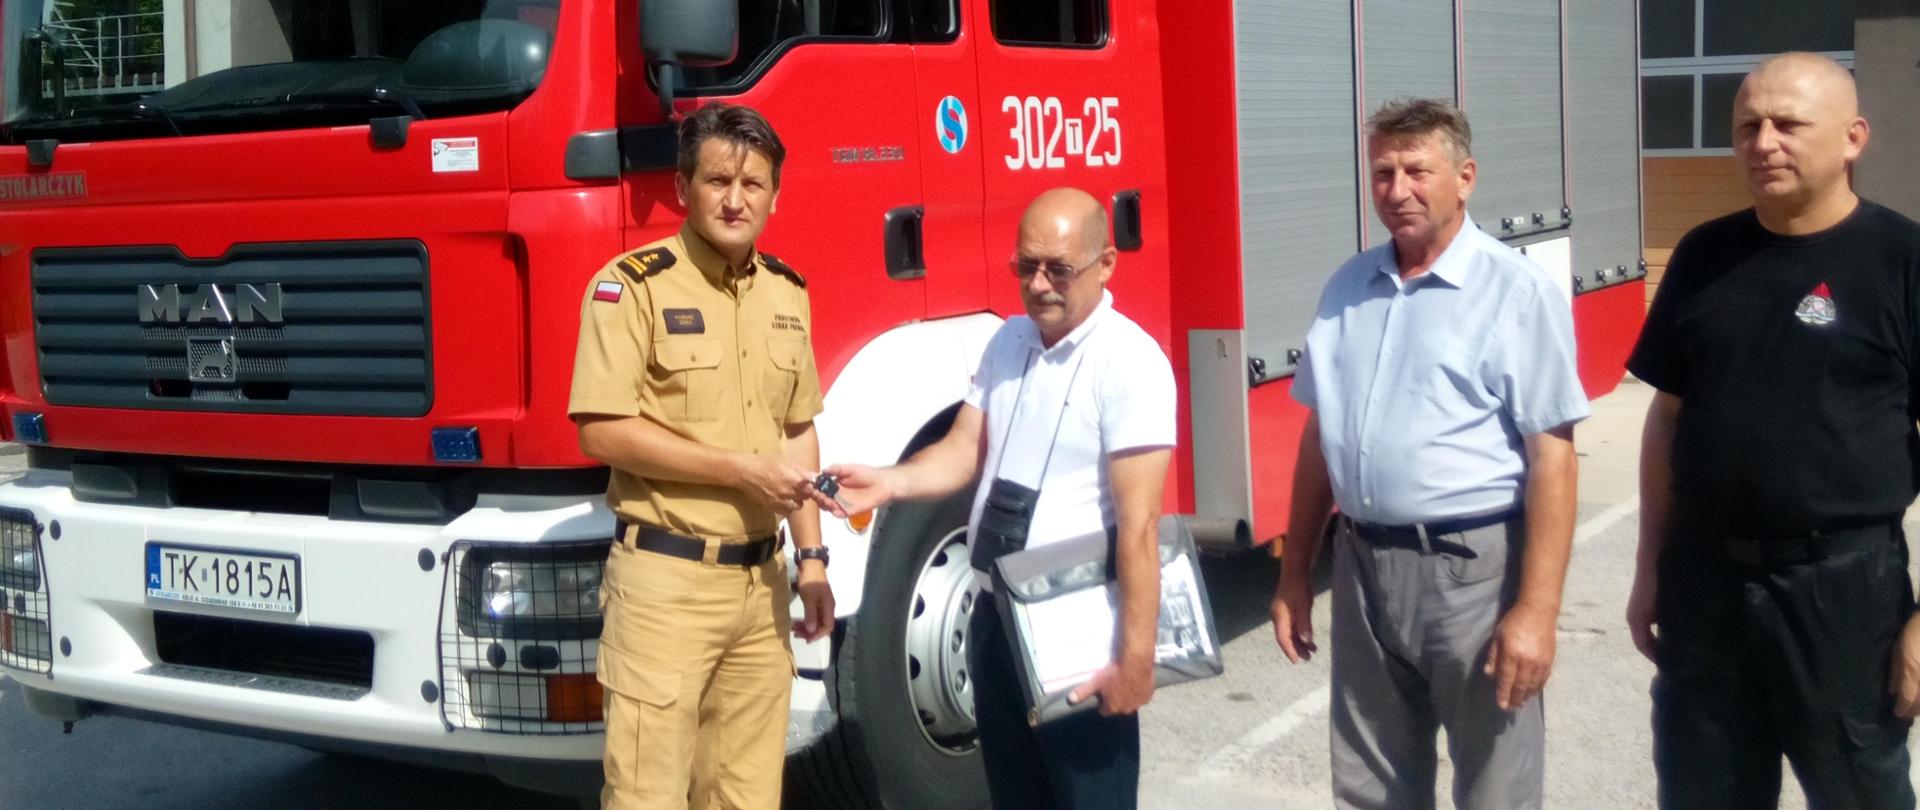 Zdjęcie przedstawia Komendanta Miejskiego Państwowej Straży Pożarnej w Kielcach przekazującego kluczyki do samochodu pożarniczego, który stanowi tło .